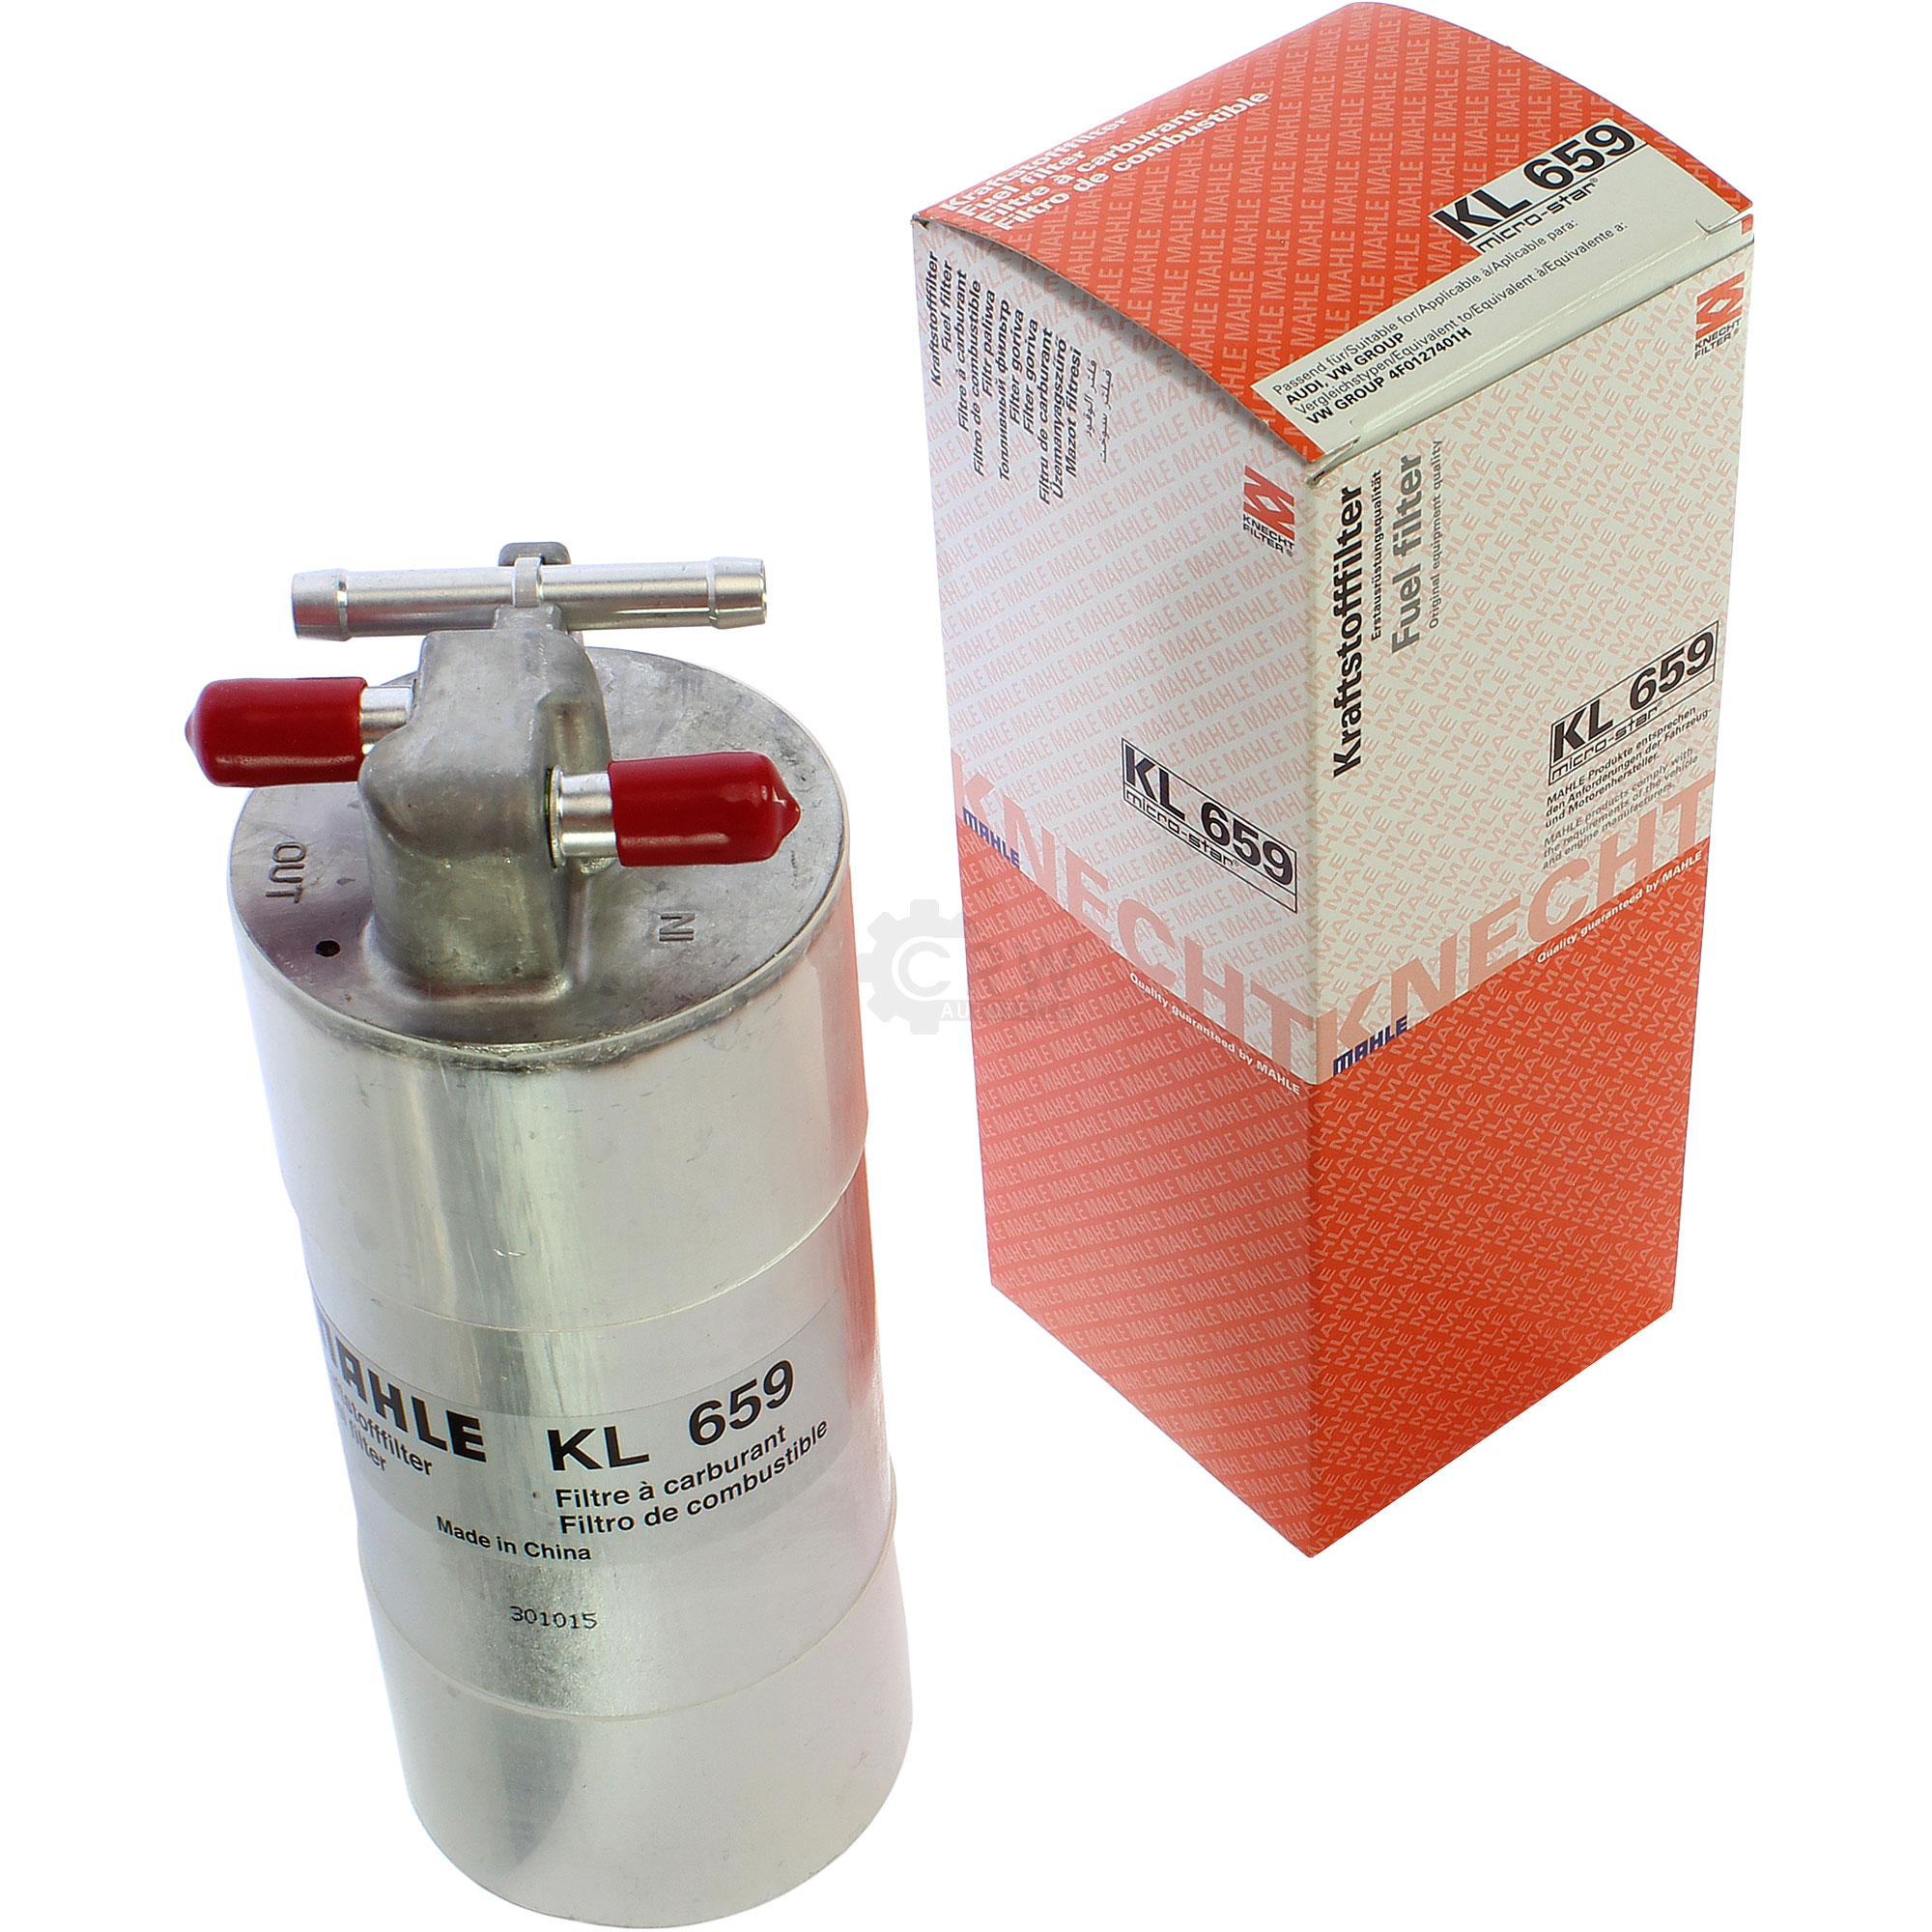 MAHLE / KNECHT KL 659 Kraftstofffilter Filter Fuel